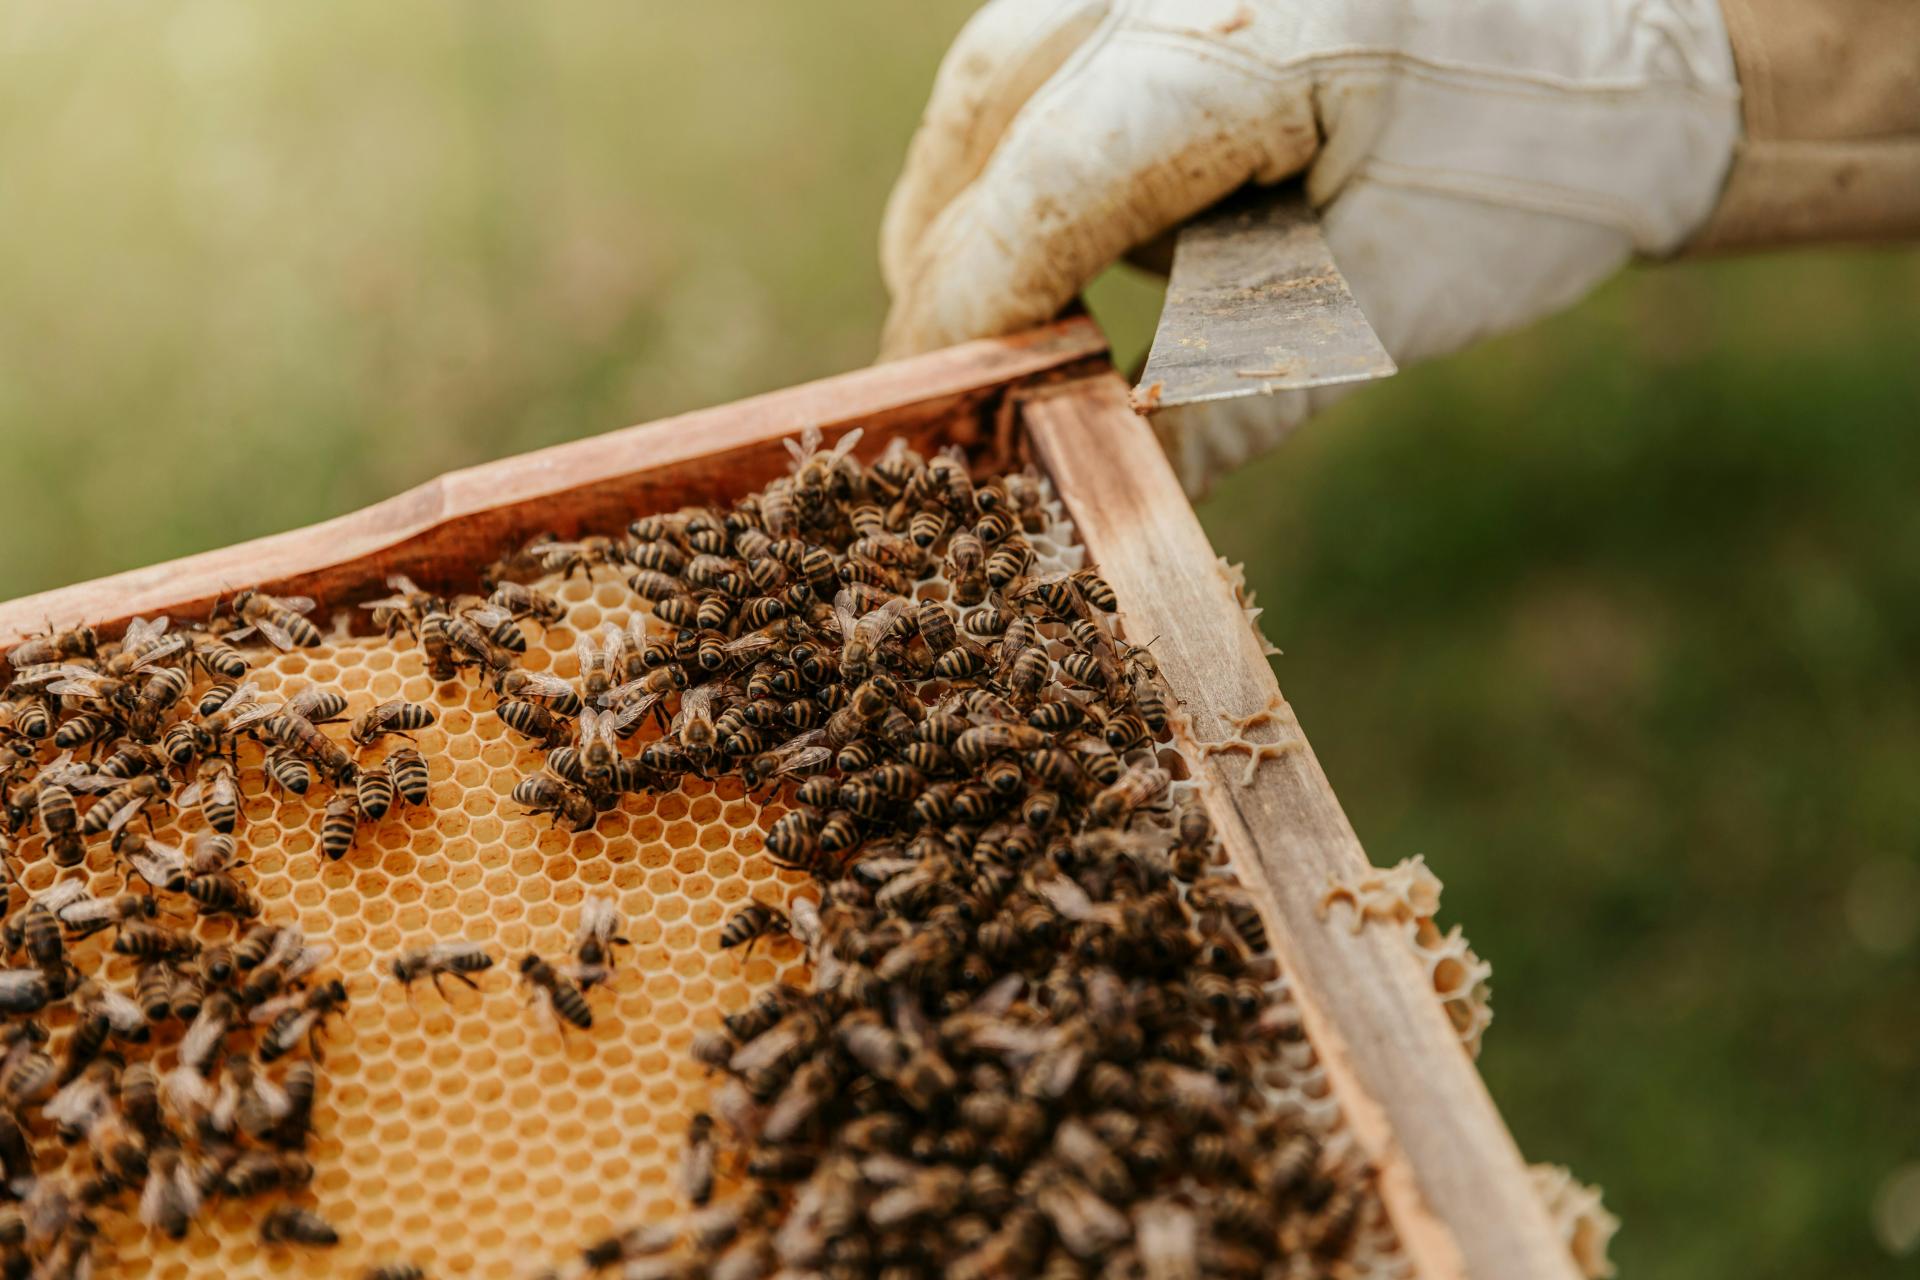 Medu má byť viac, ceny zamrzli. Včelári však varujú: prichádza agresívny tvor z Ázie